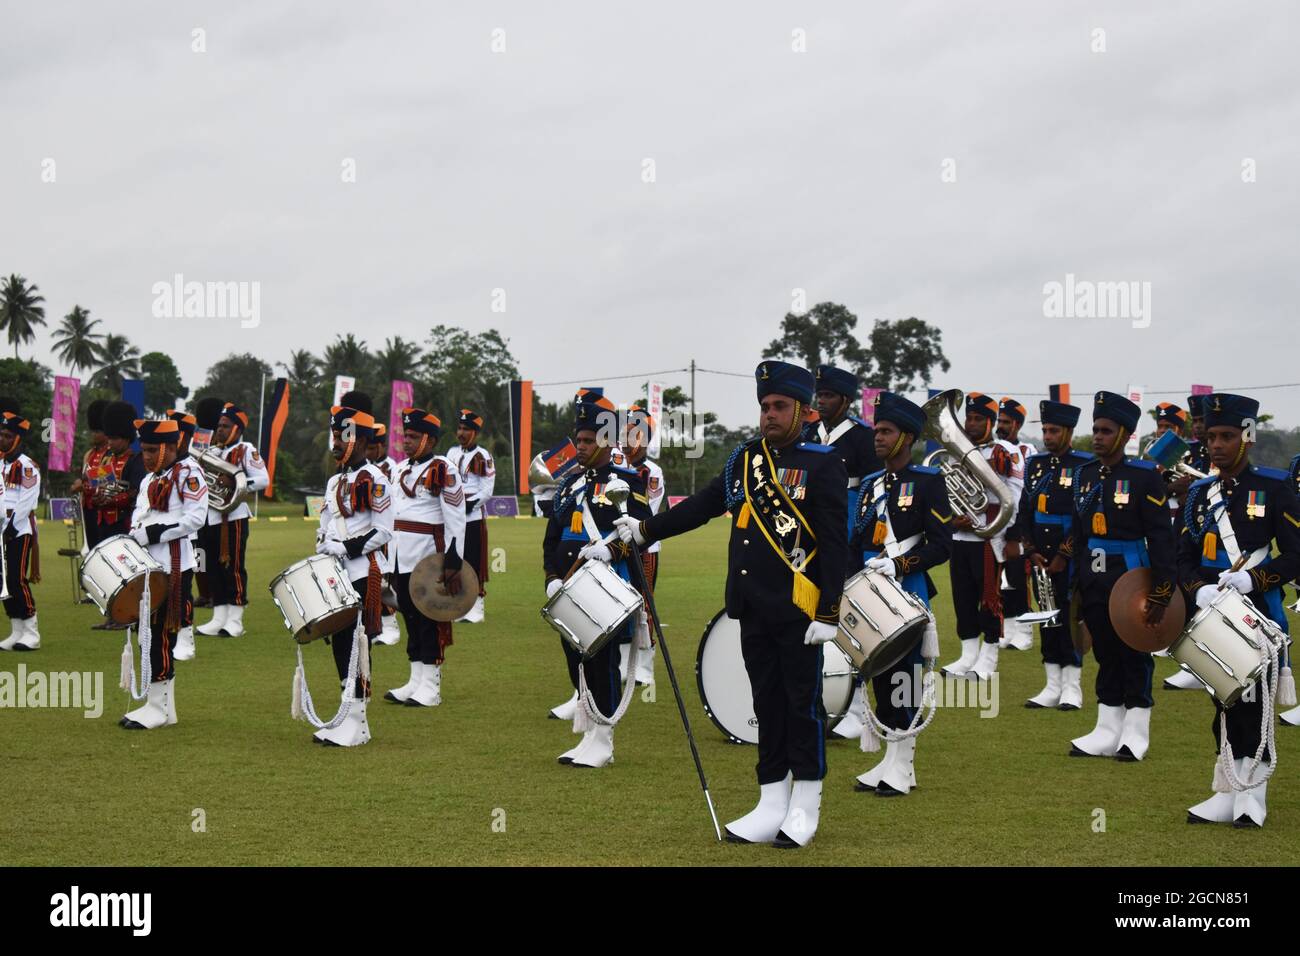 Bandas del Ejército de Sri Lanka en una ceremonia de apertura de una liga de críquet. Campos de cricket de la Ordenanza del Ejército. Dombagoda. Sri Lanka. Foto de stock